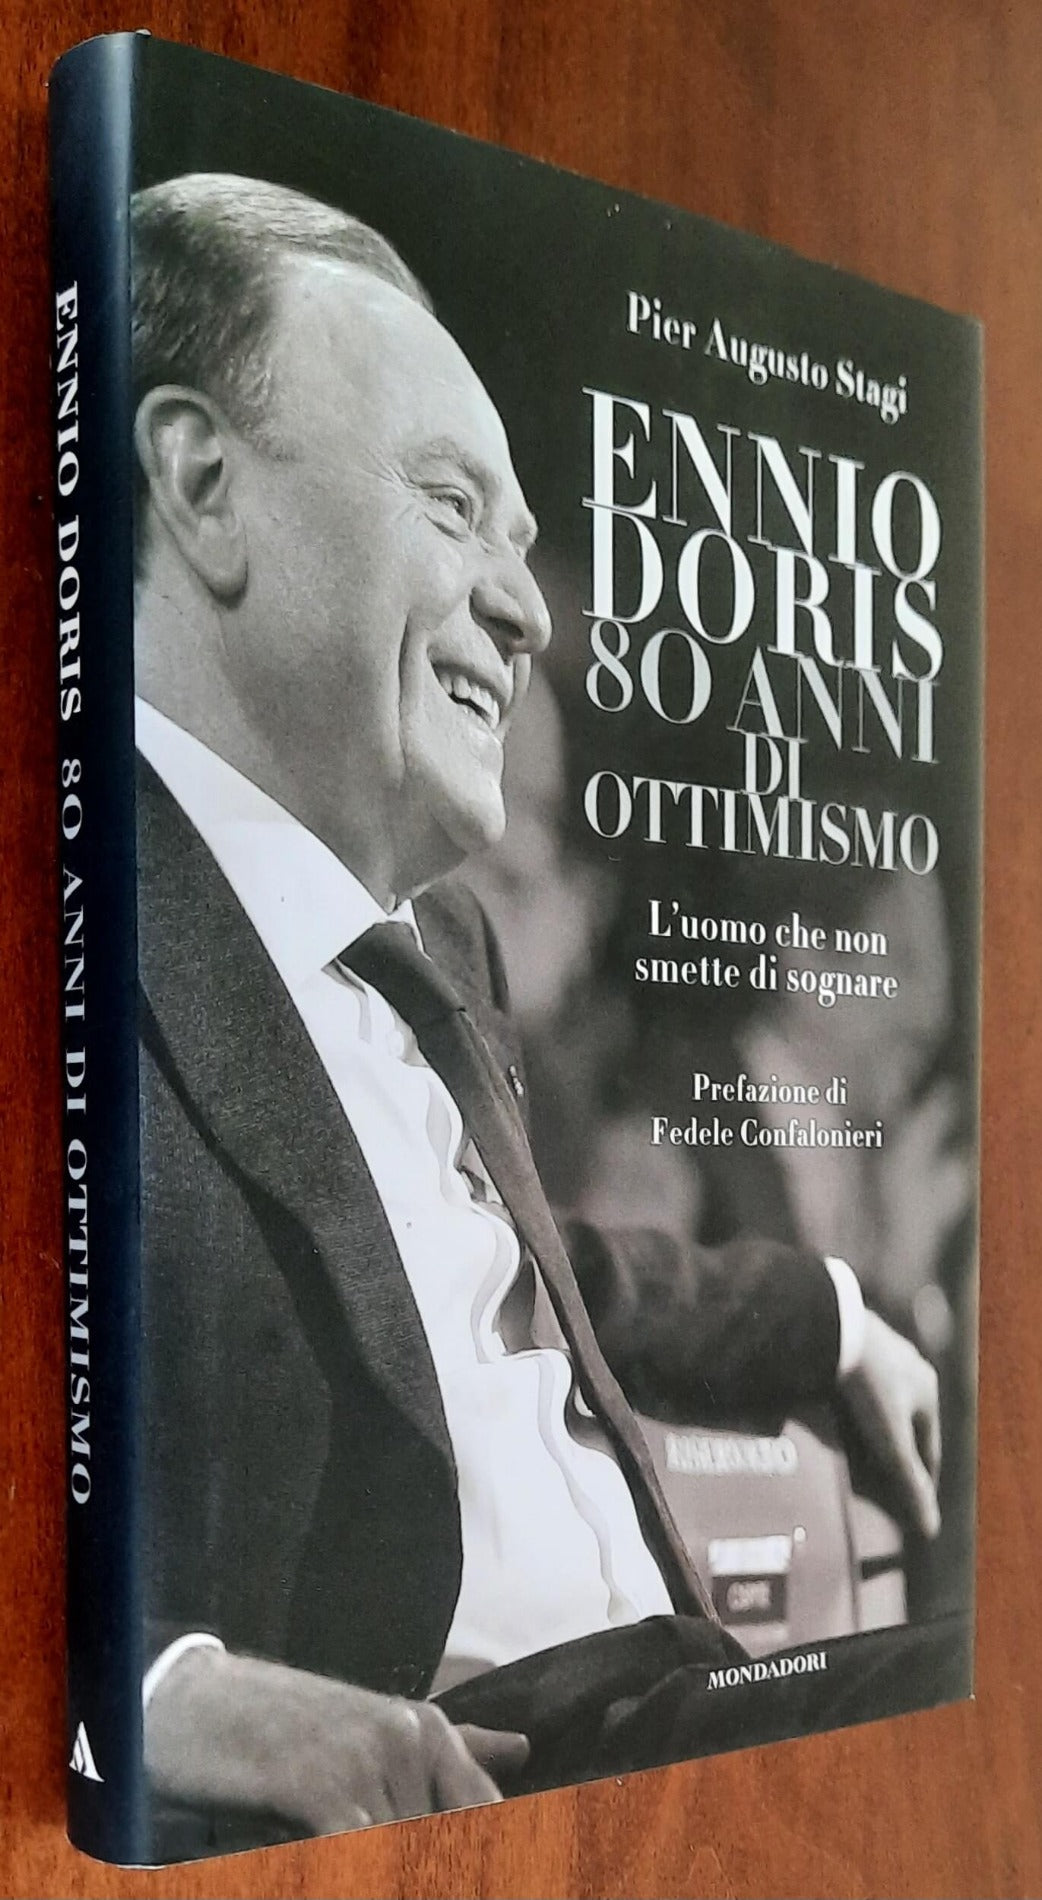 Ennio Doris. 80 anni di ottimismo - Mondadori